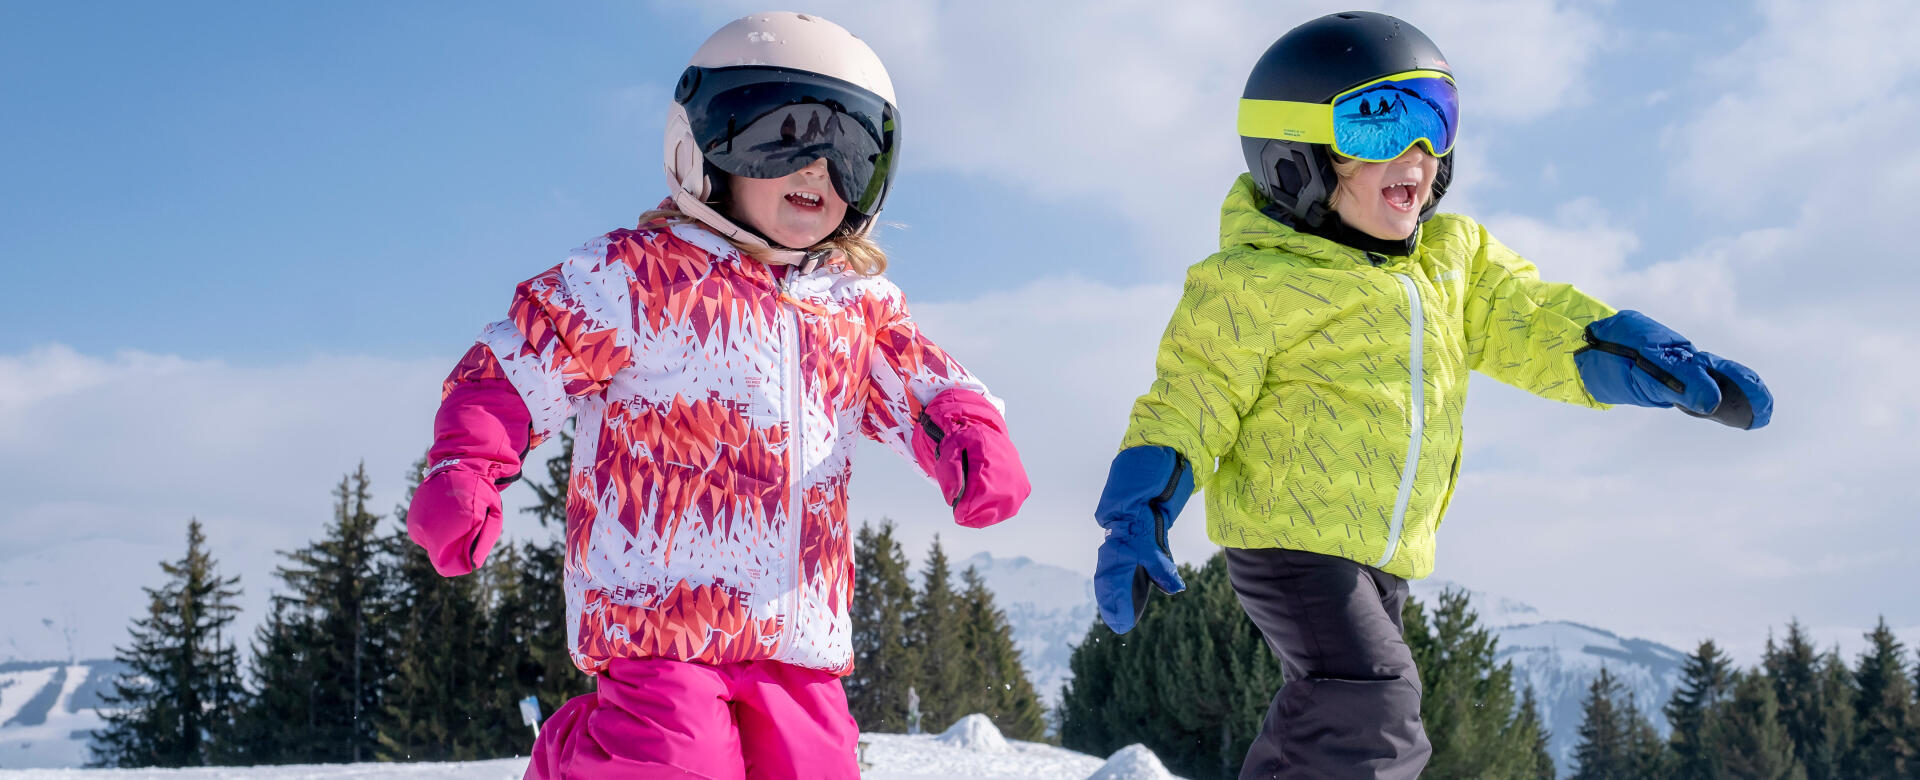 Como vestir adequadamente as crianças no ski